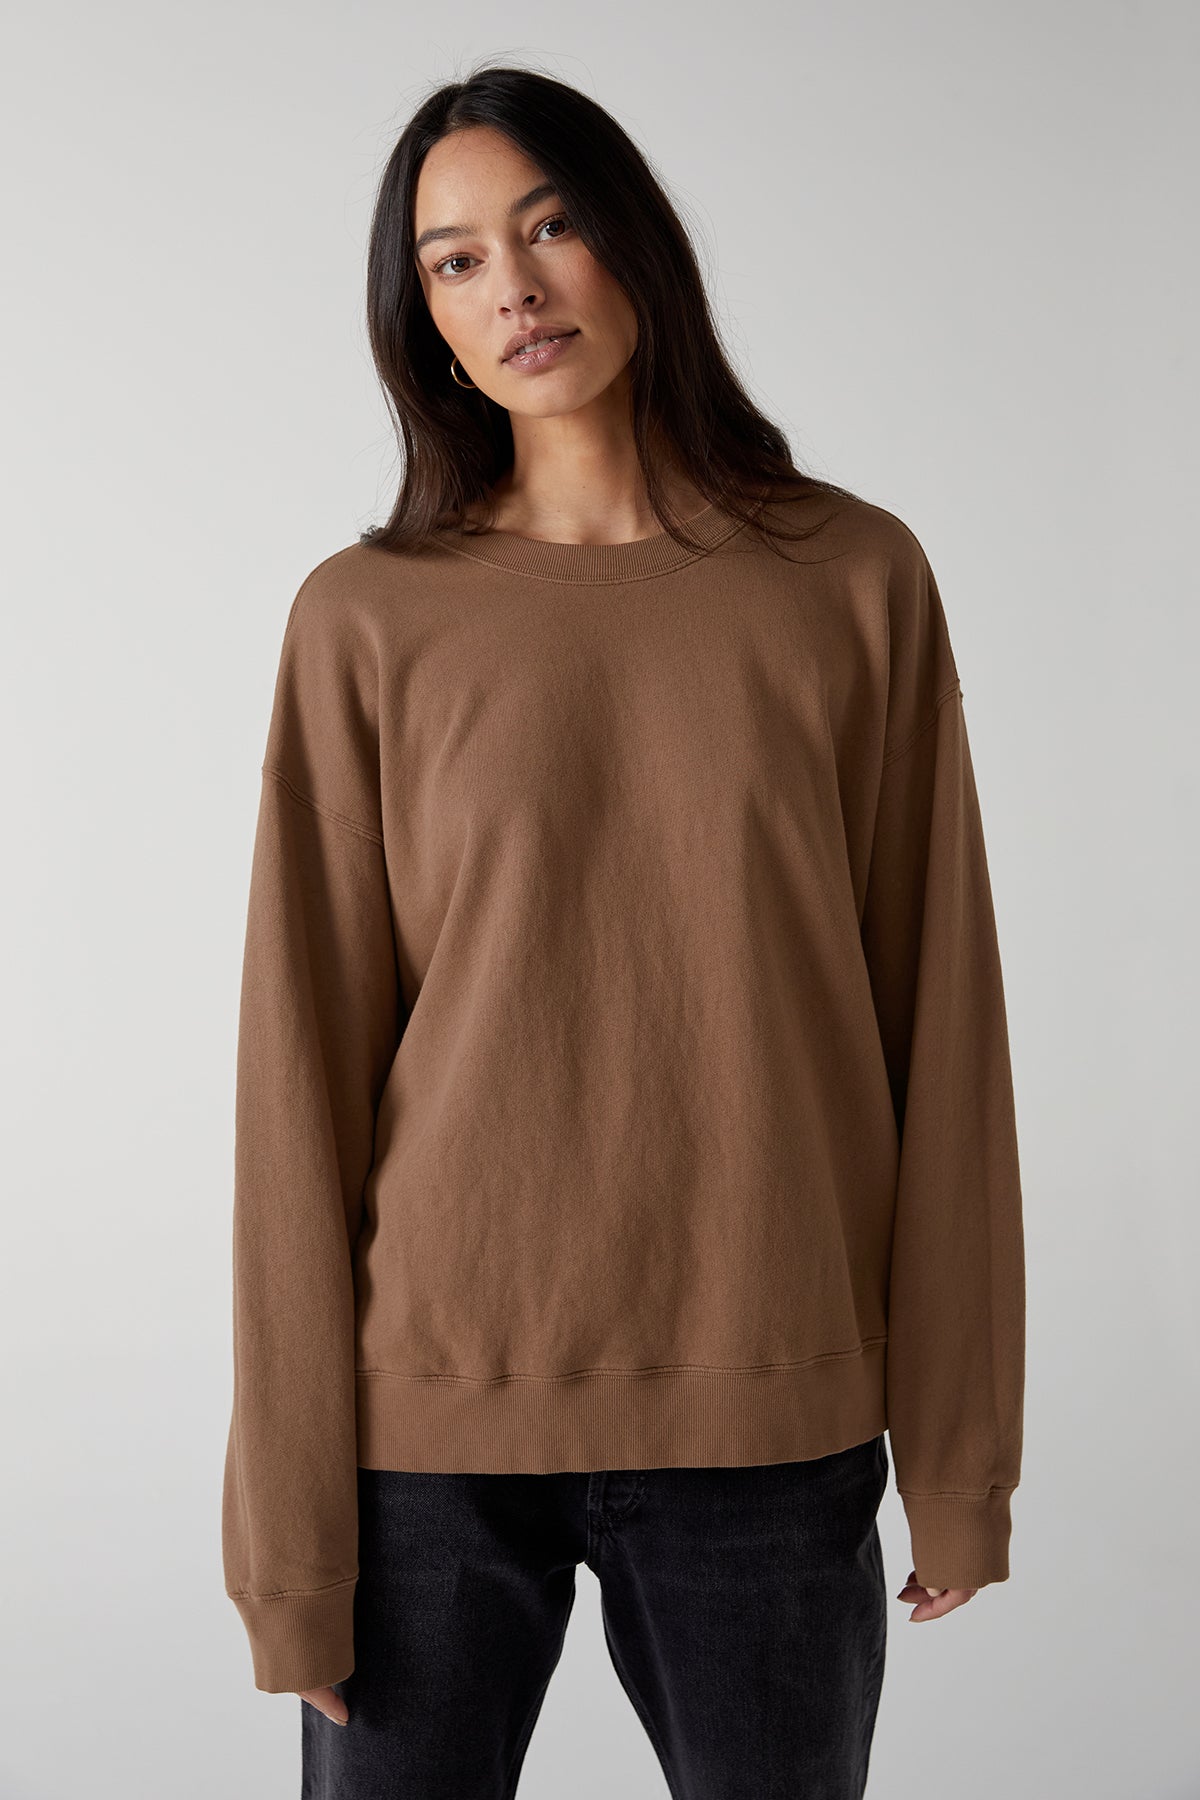 Abbot Sweatshirt in hazelnut organic fleece front-25316001972417